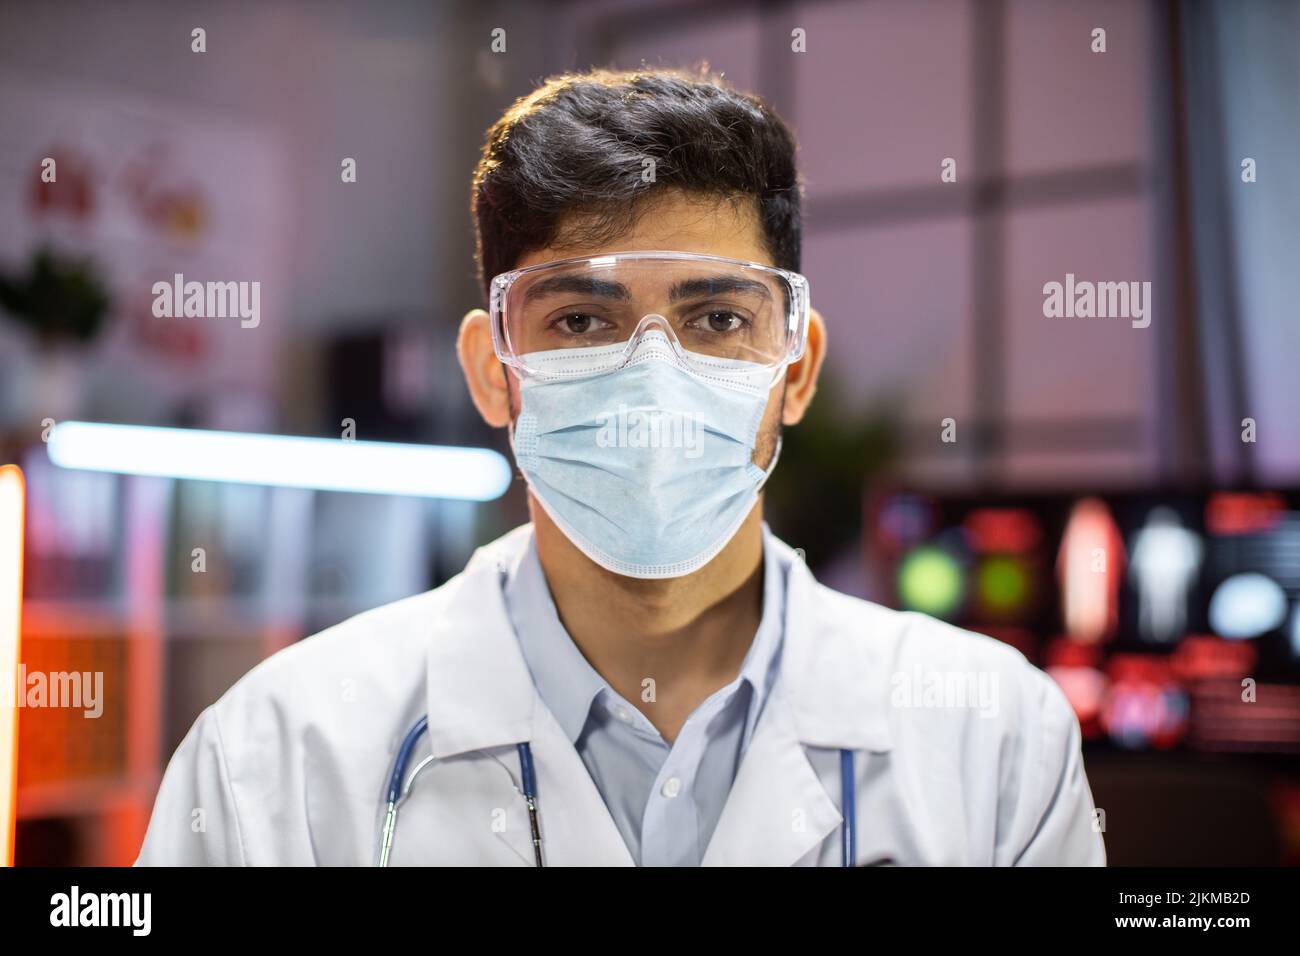 Ritratto di uomo indiano professionale microbiologo o medico di lavoro utilizzando maschera di protezione in laboratorio. Foto Stock